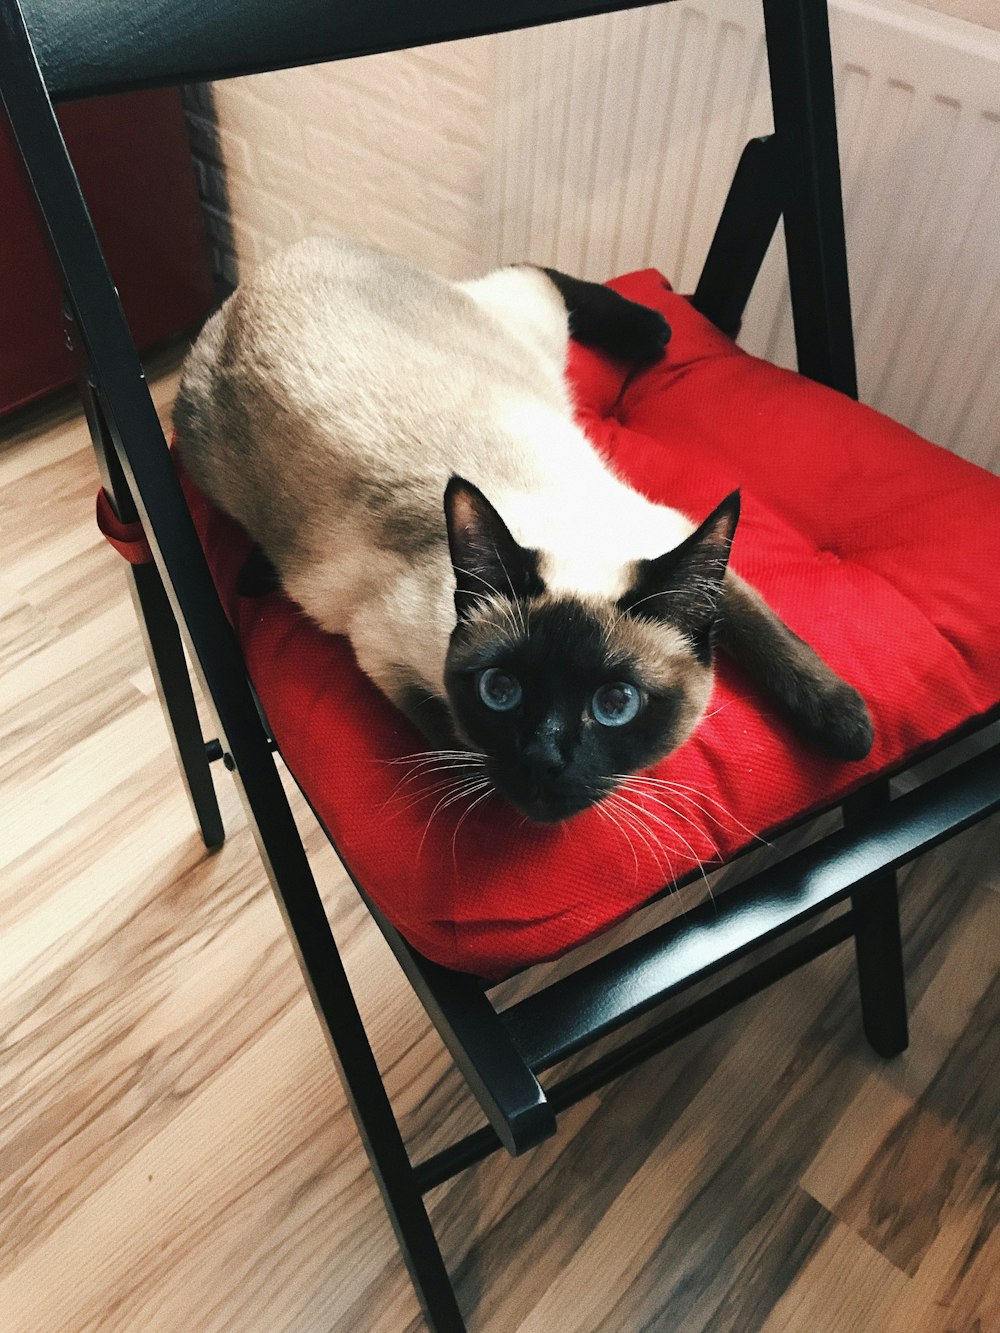 gato siamese na cadeira vermelha e preta